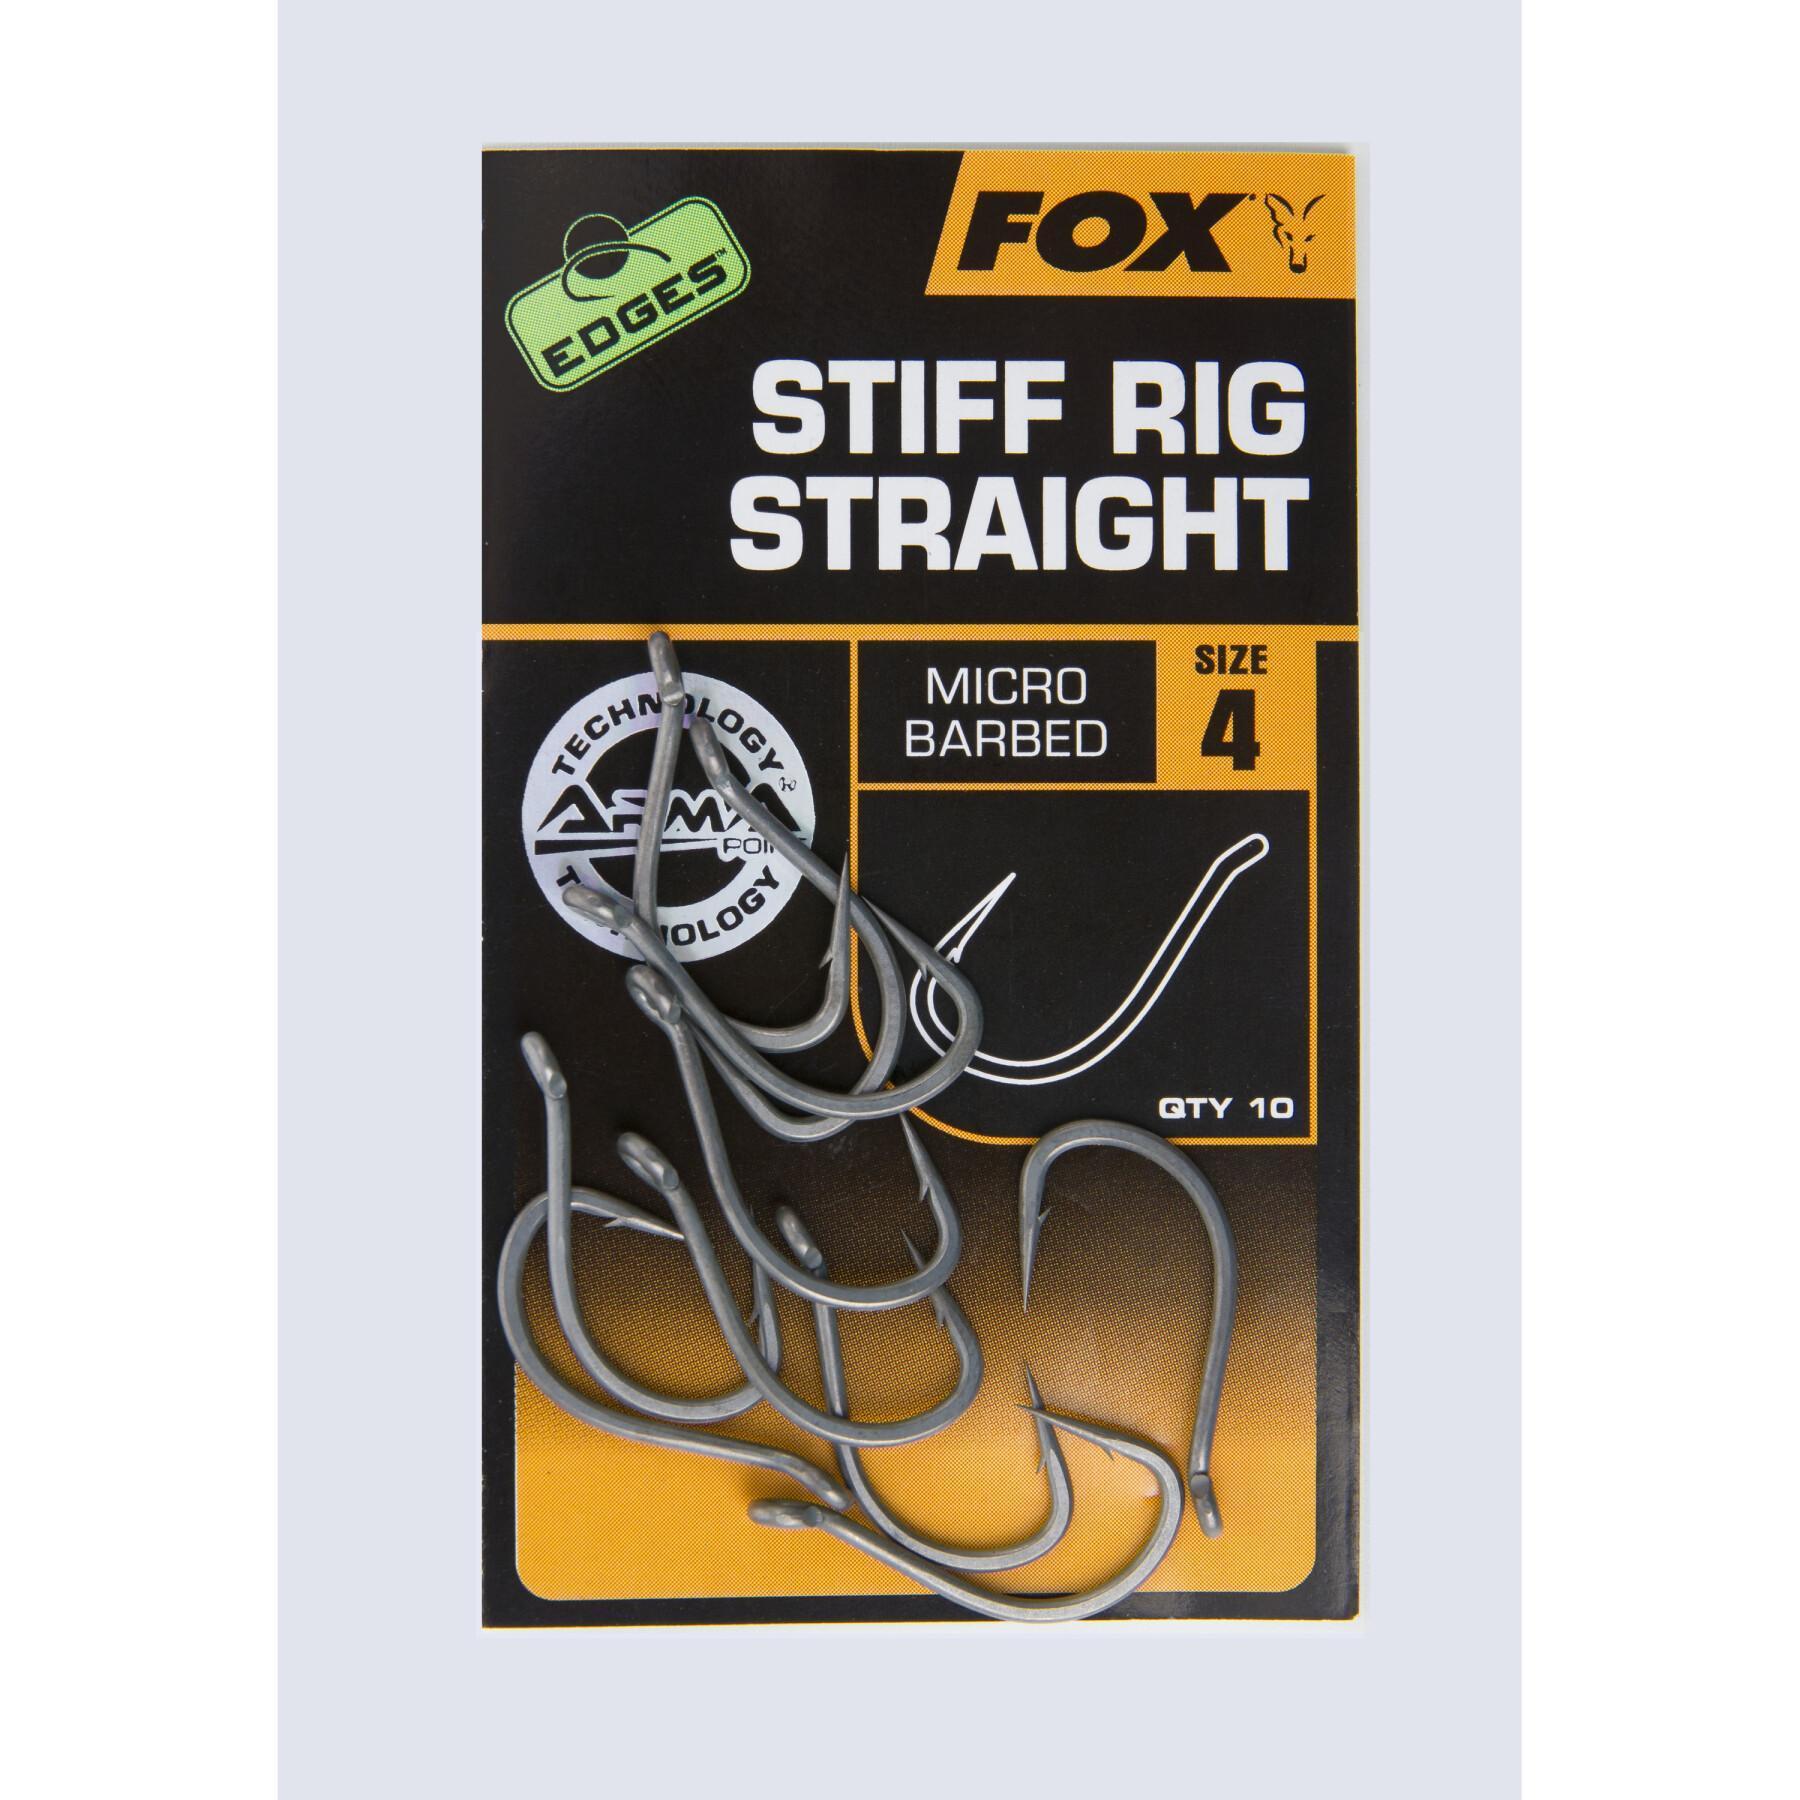 Haak Fox Stiff Rig Straight Edges taille 4